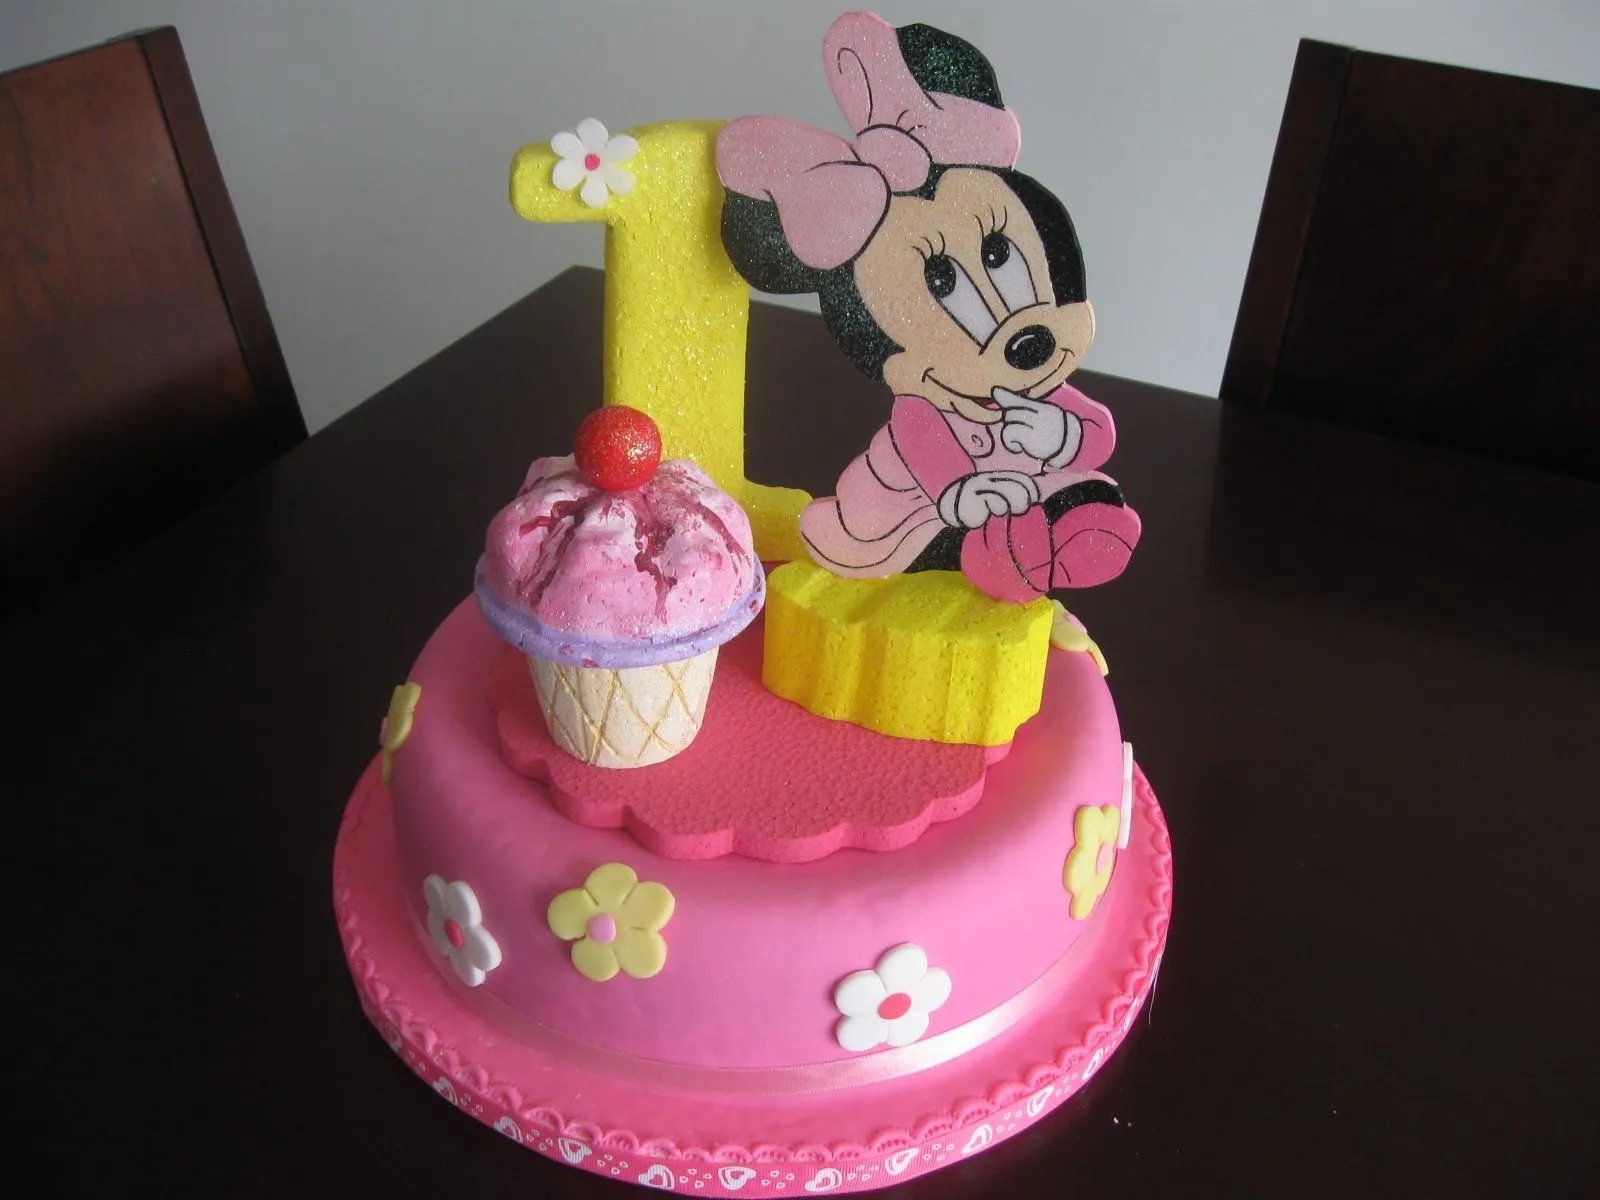 Delicake Tortas y Postres: Torta infantil en pastillaje de Minnie bebe